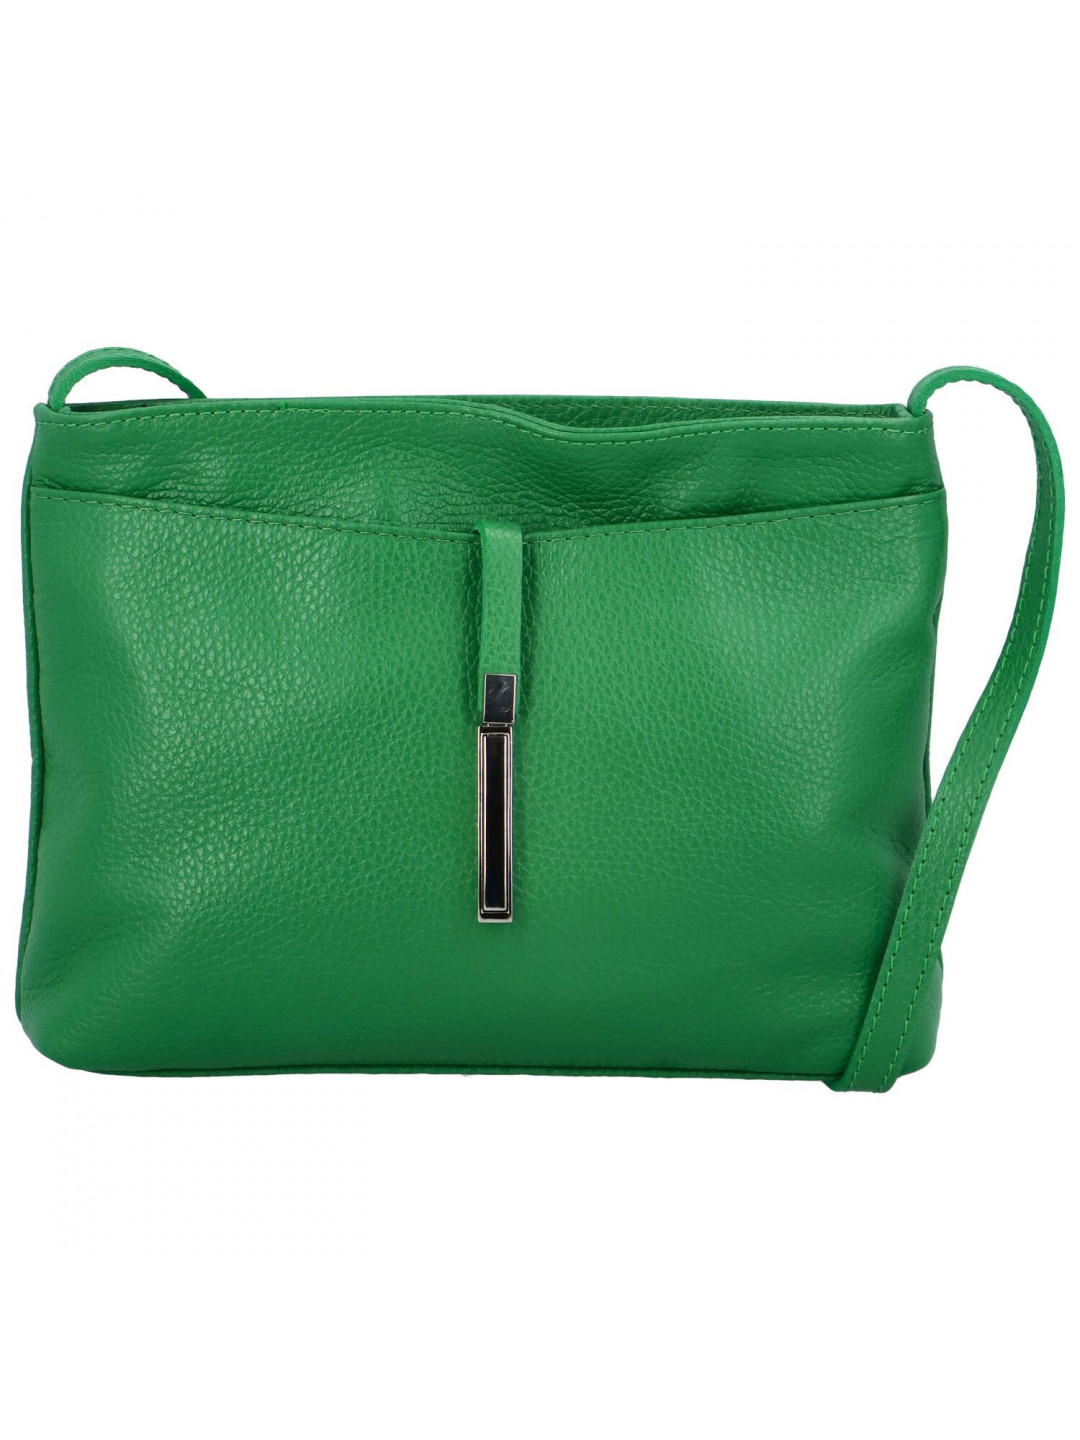 Dámská kožená kabelka Mirna výrazná zelená